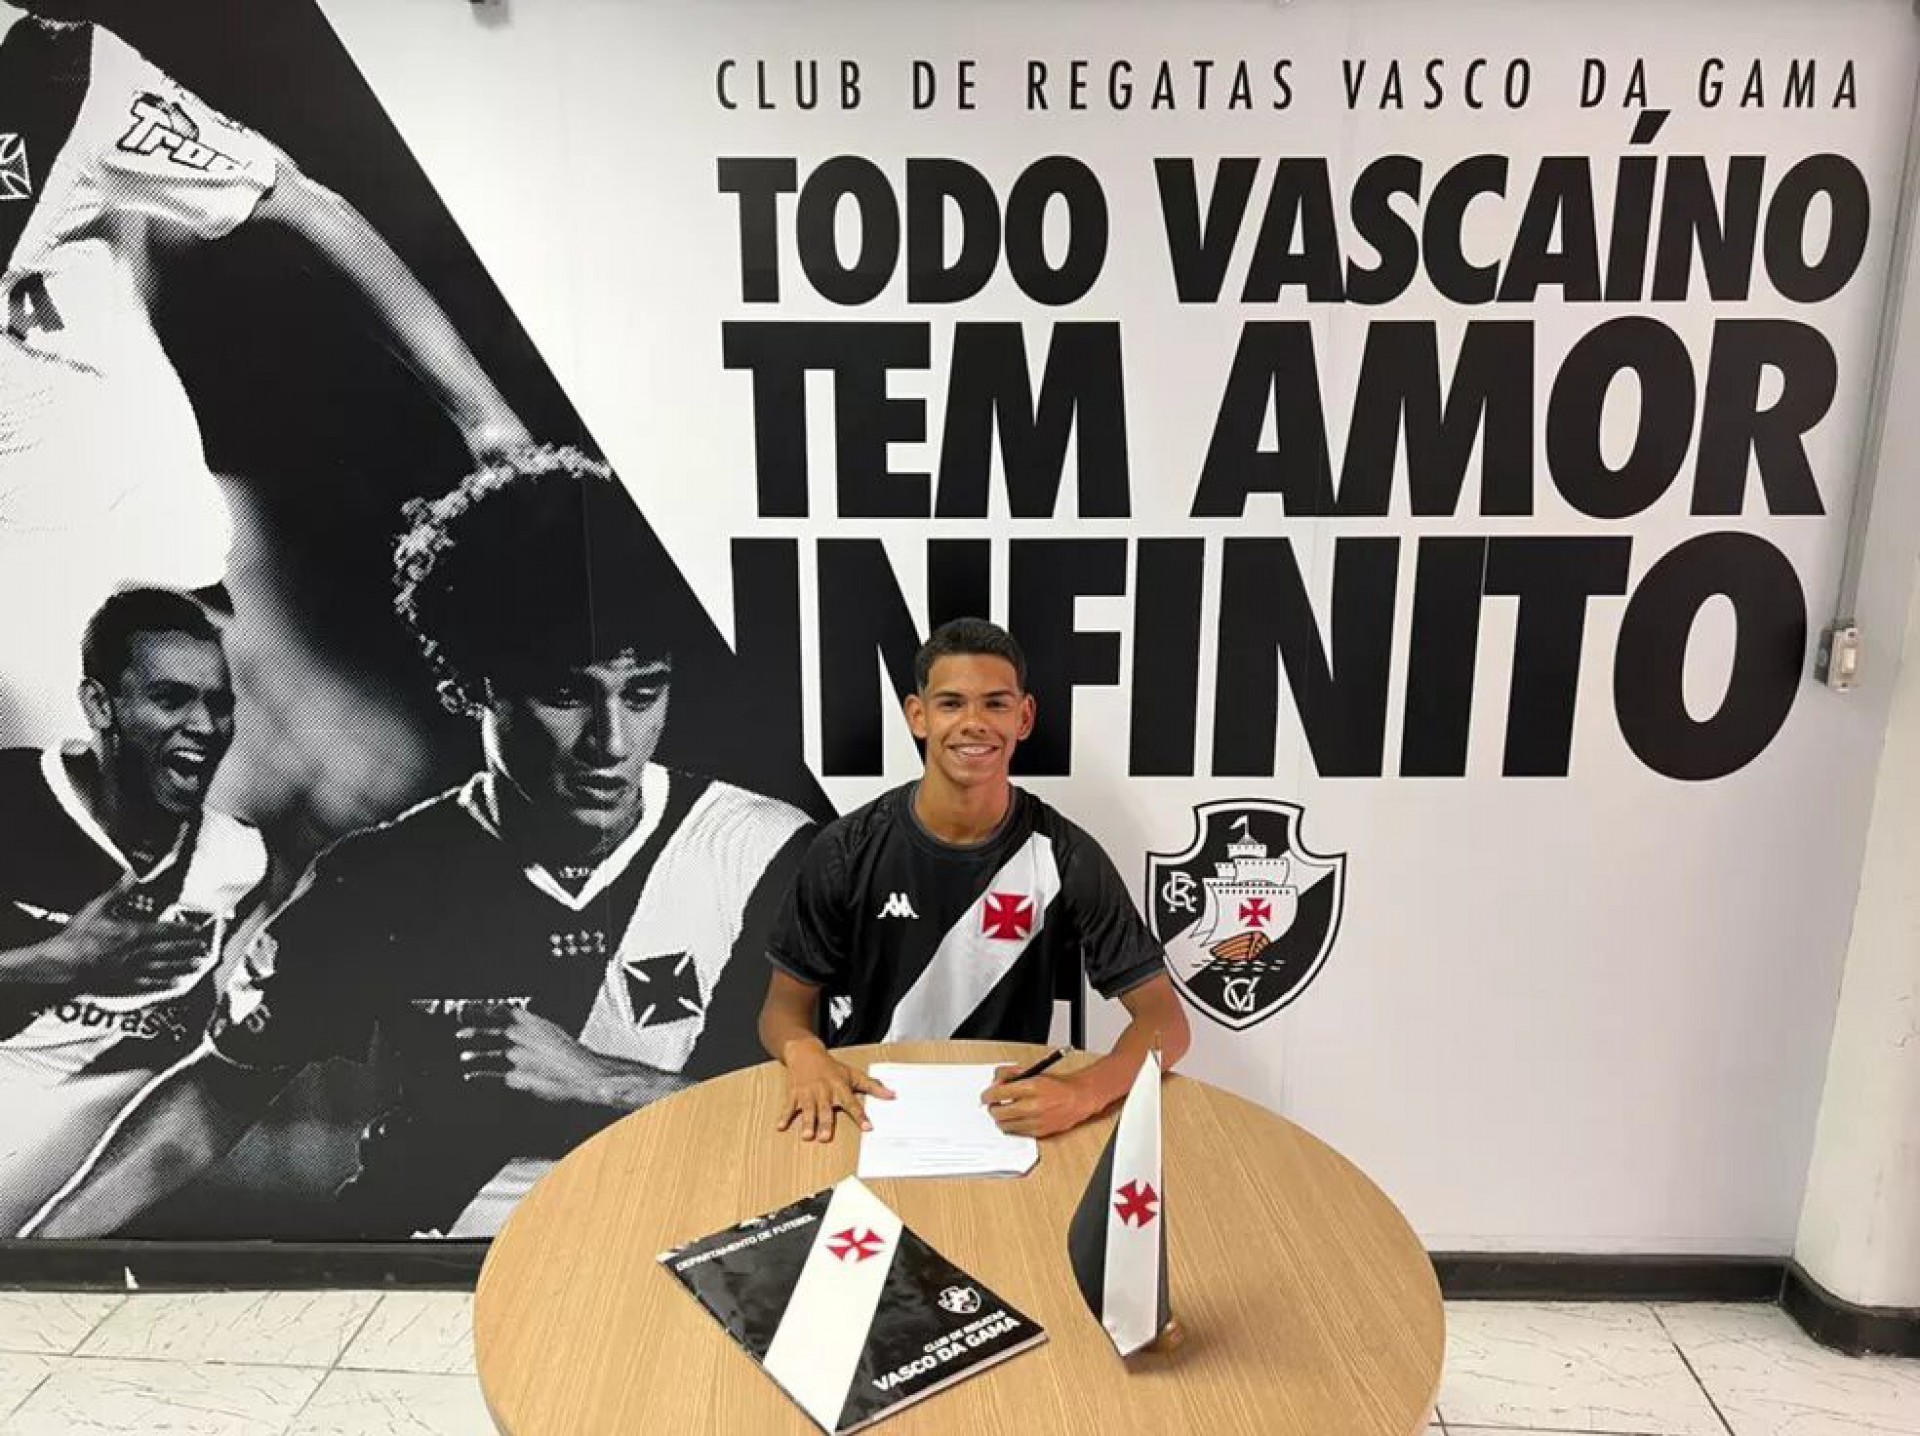 André assina contrato profissional com o Vasco até 2025 - Foto: Divulgação/Vasco